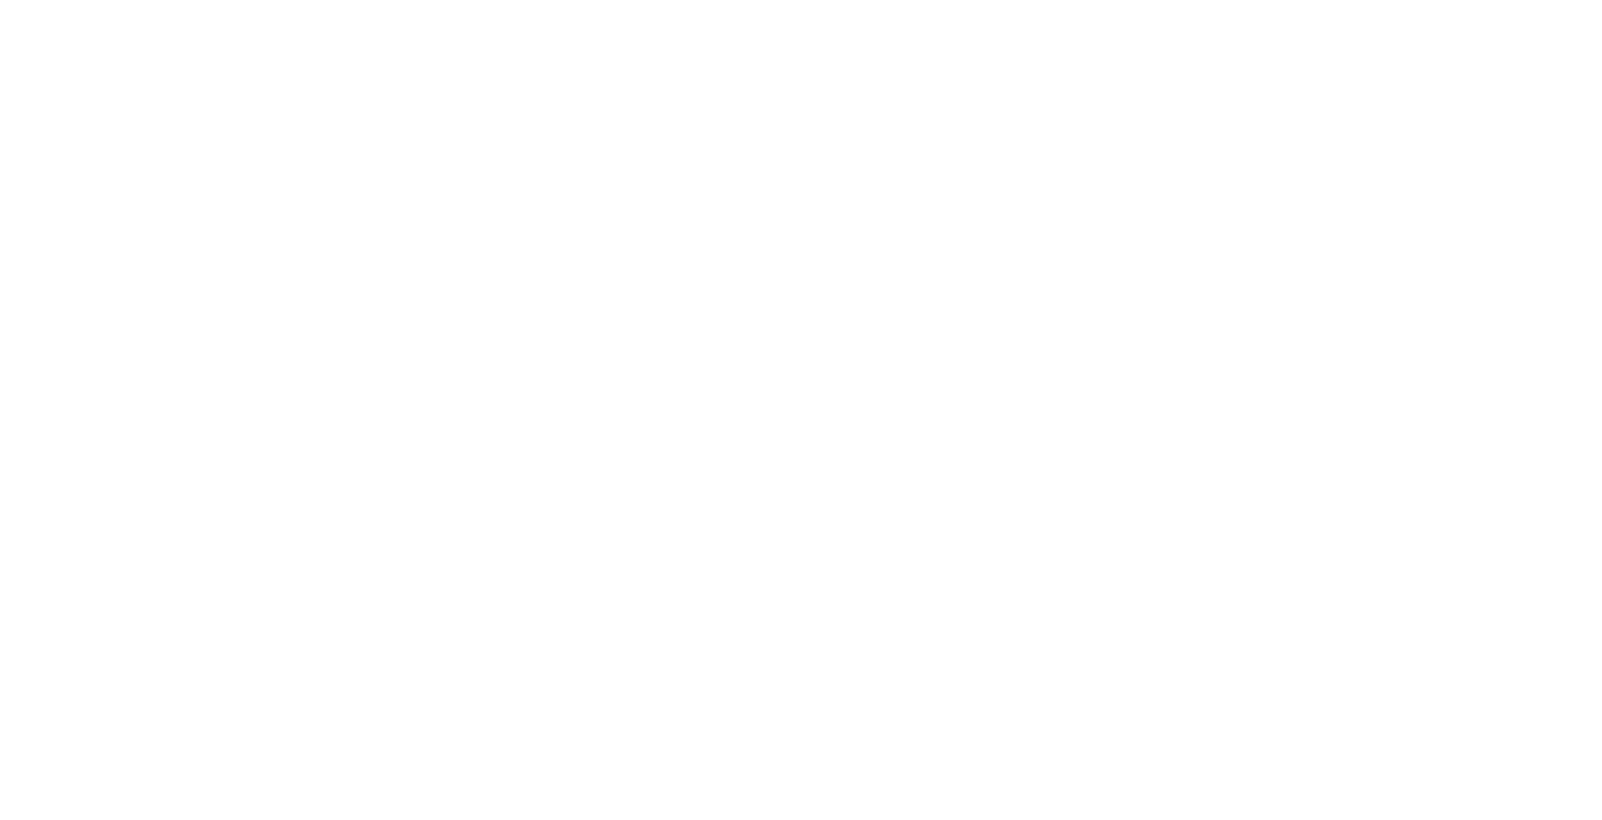 Among the Wild